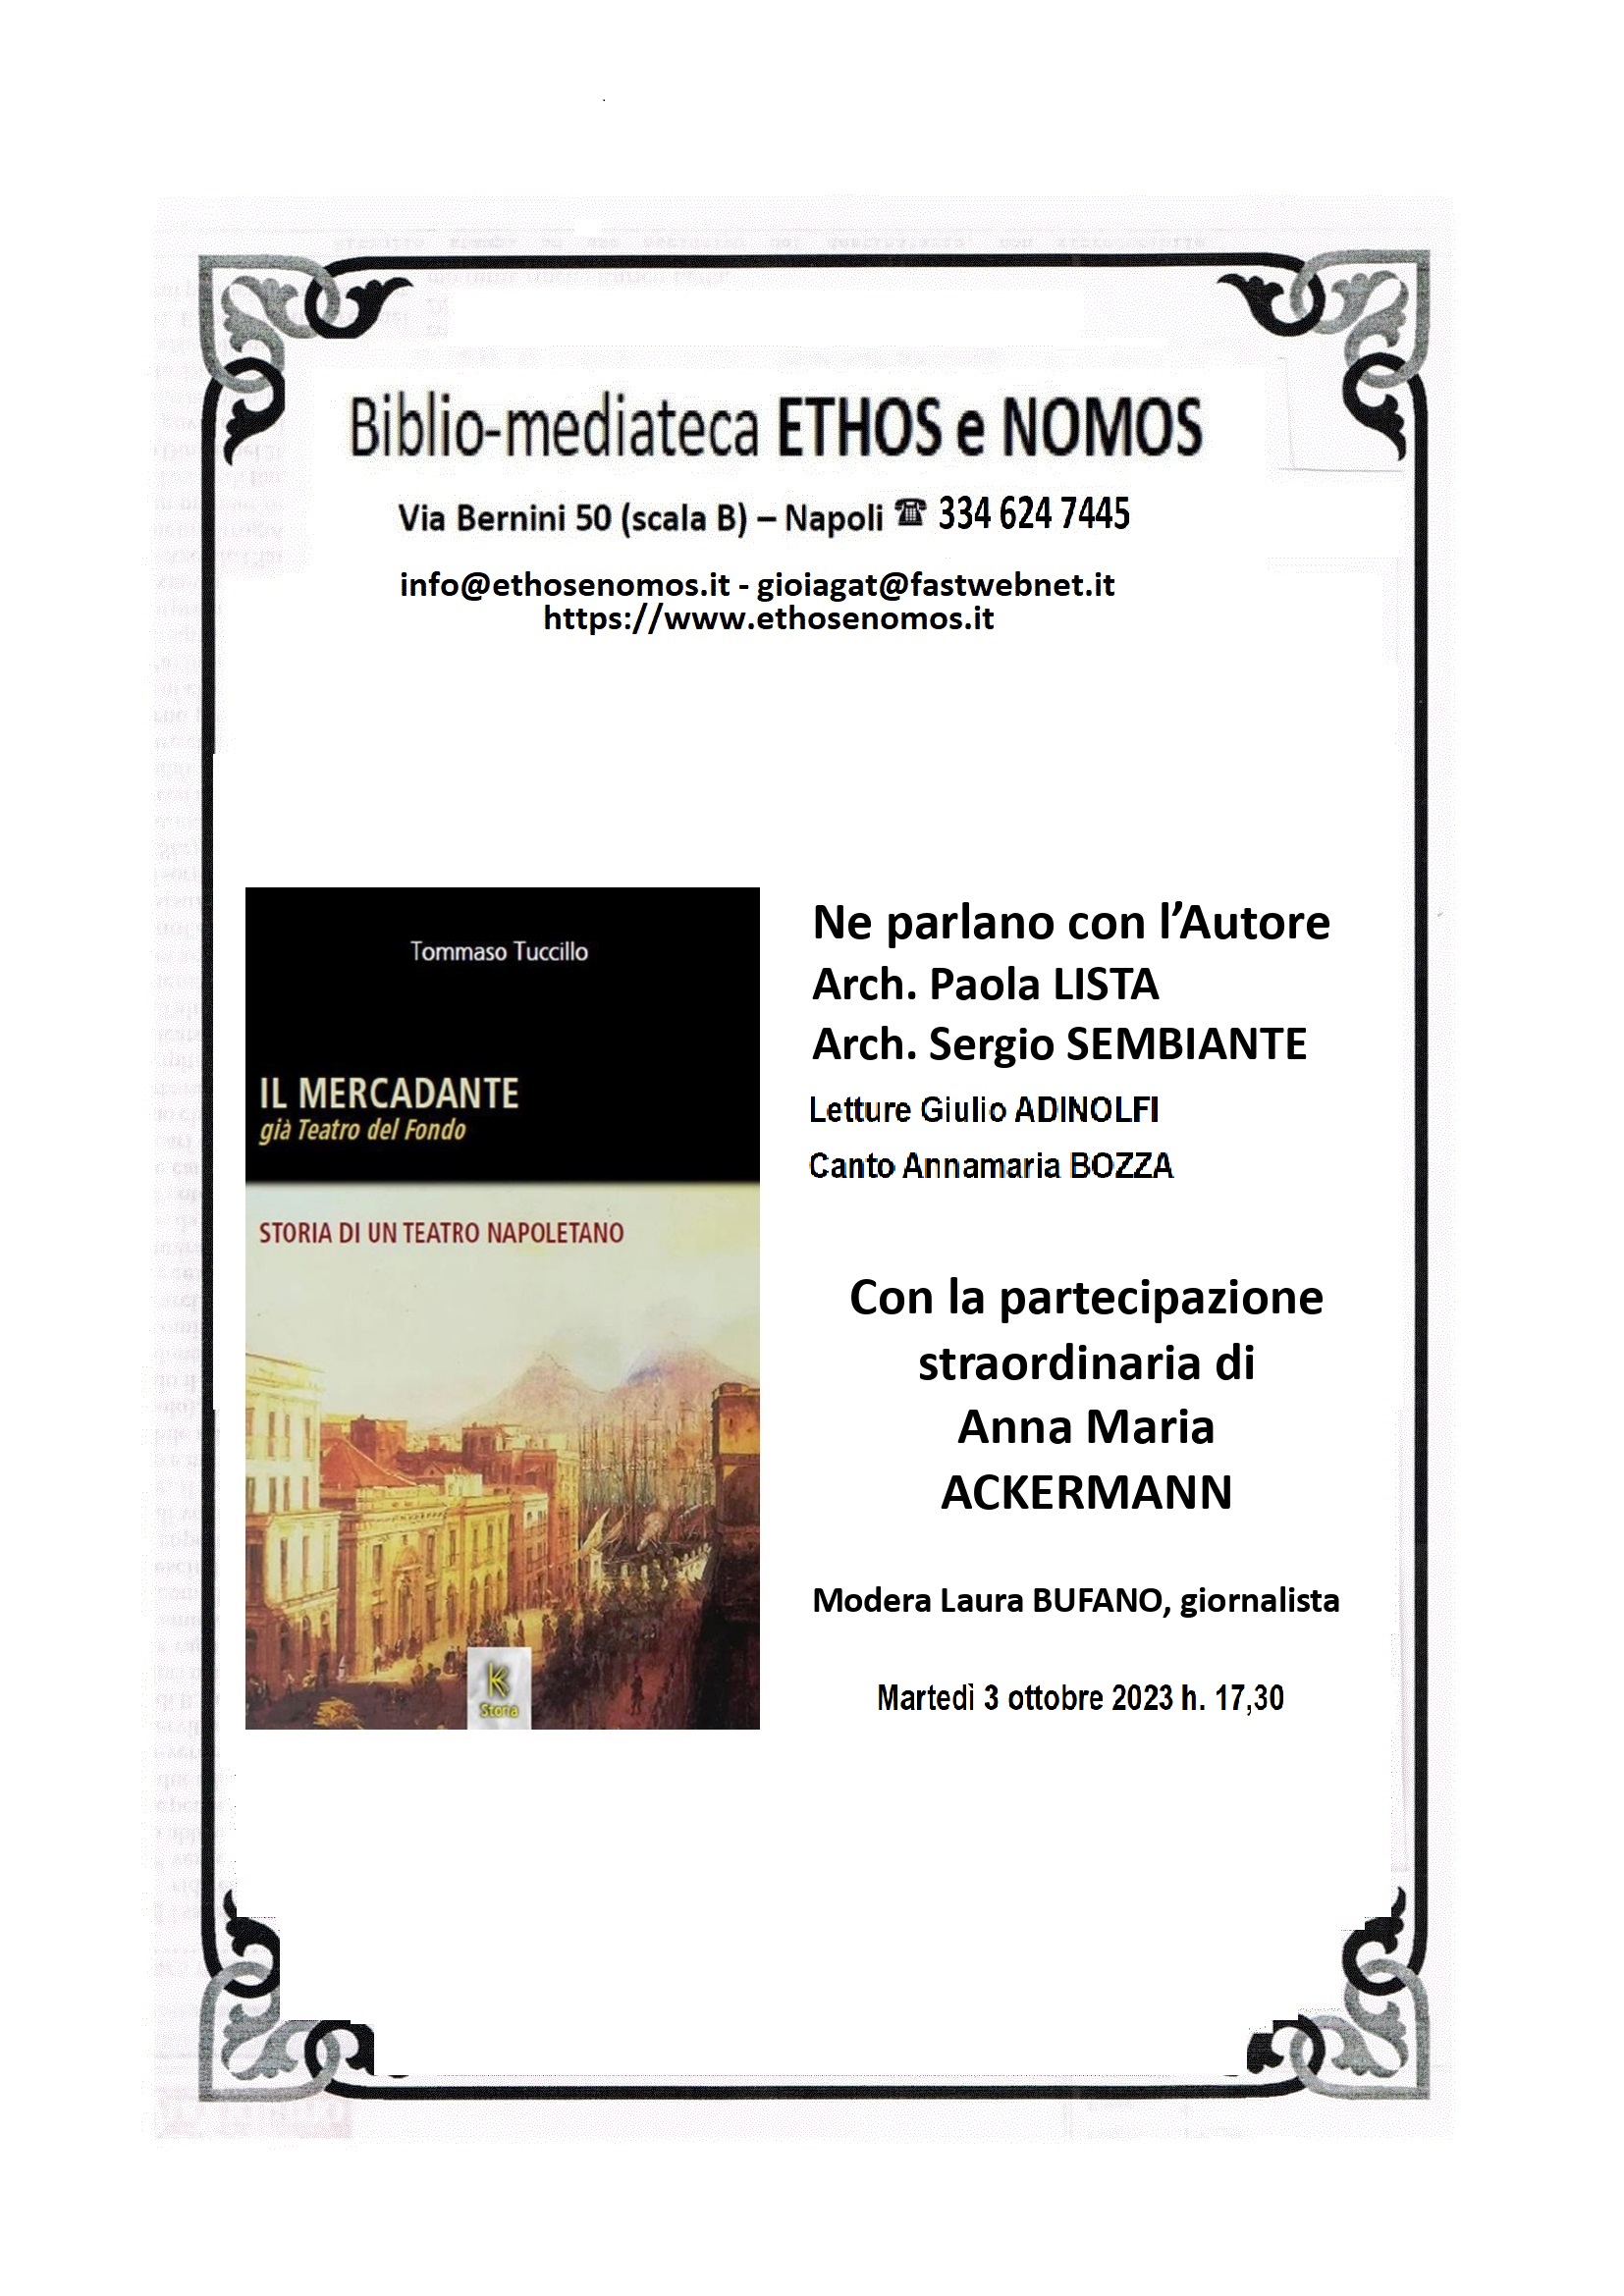 Tommaso Tuccillo - Presentazione del libro "Il teatro Mercadante" ediz. Kairòs